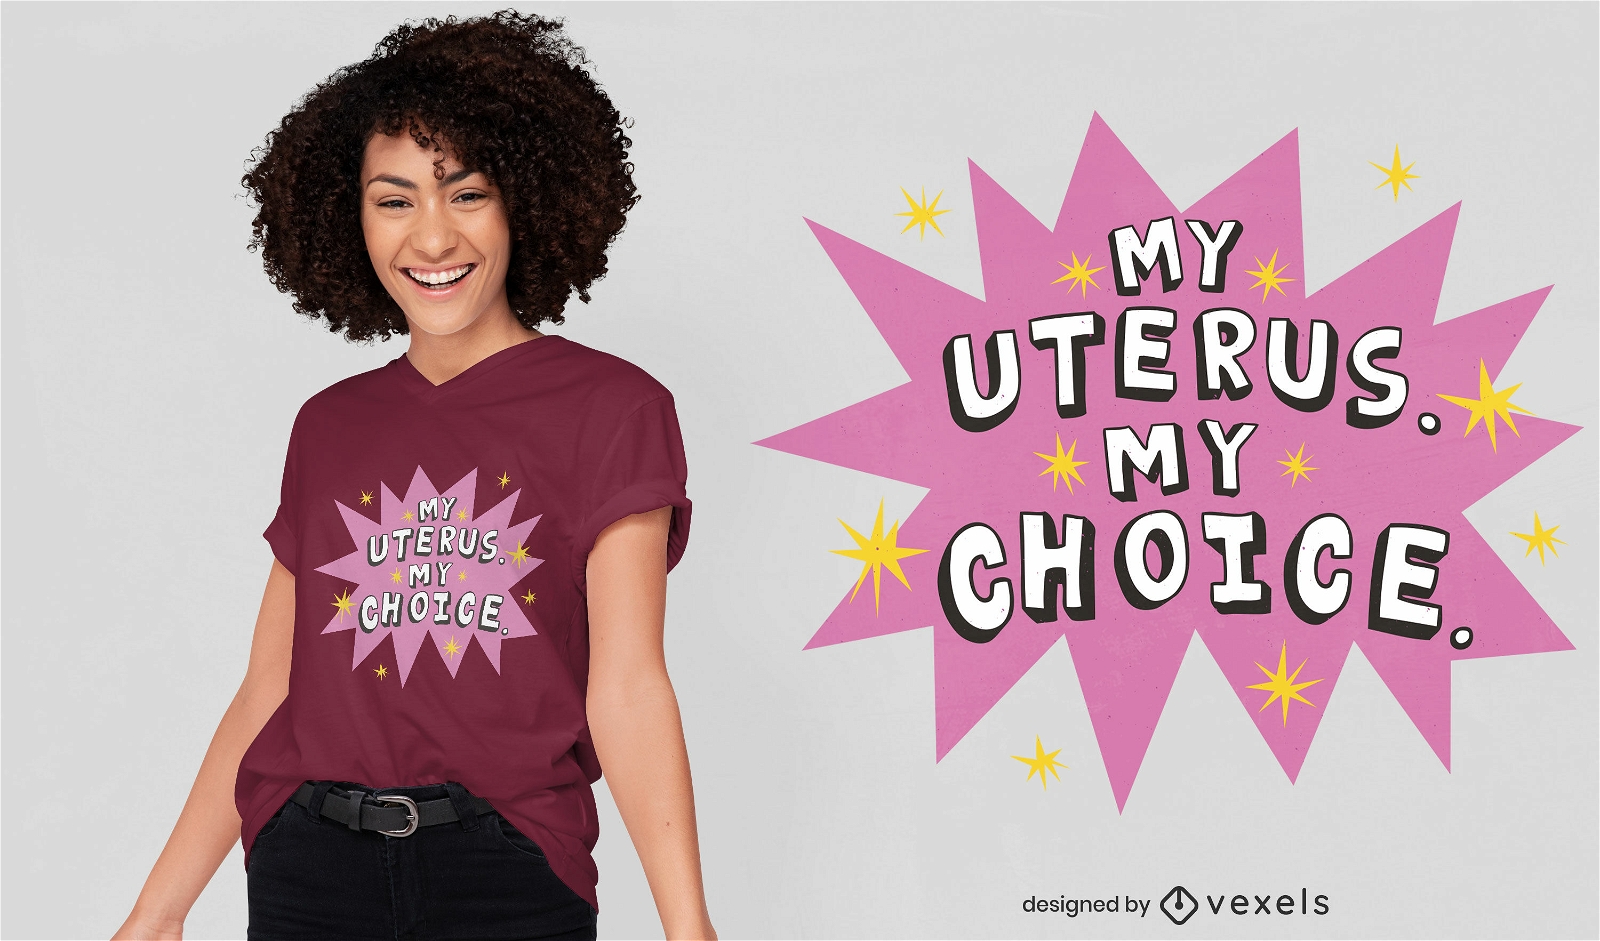 My uterus my choice retro t-shirt design